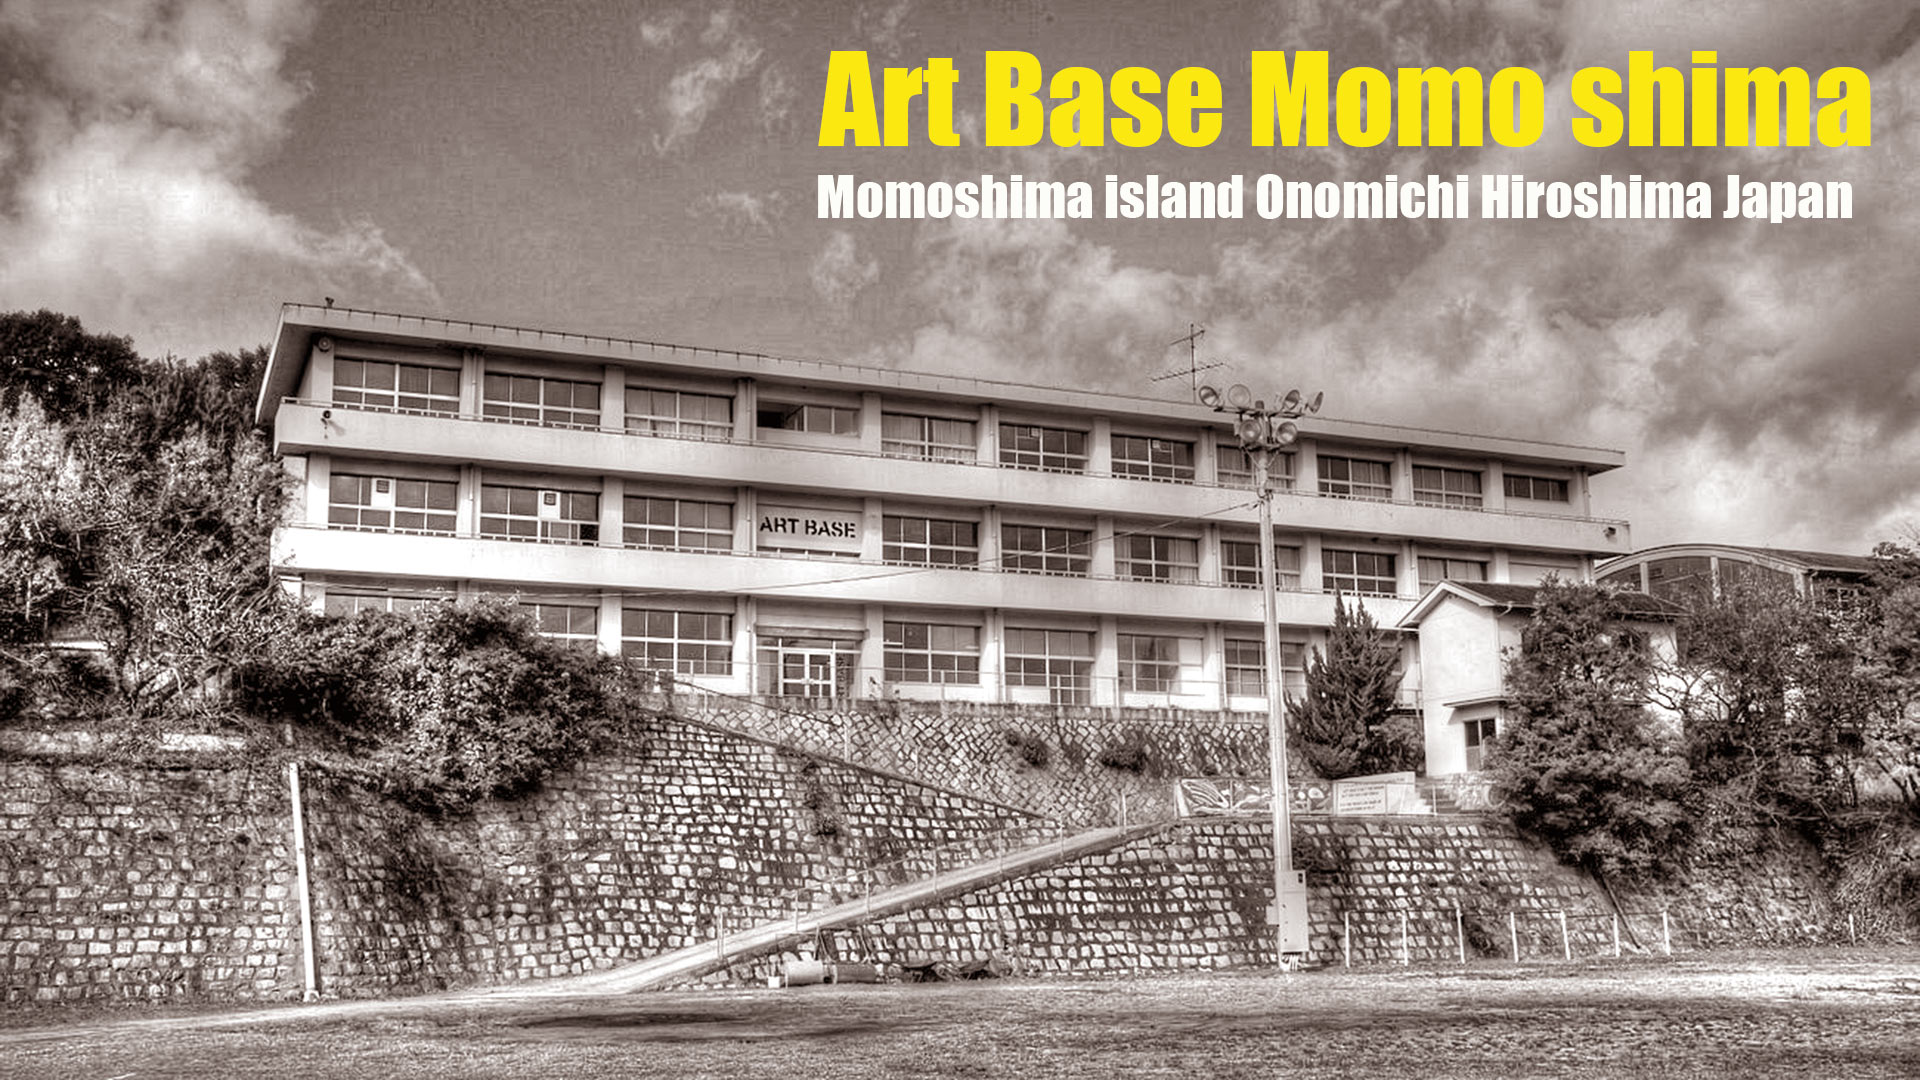 アートベース百島(あーとべーすももしま) Art Base Momo shima